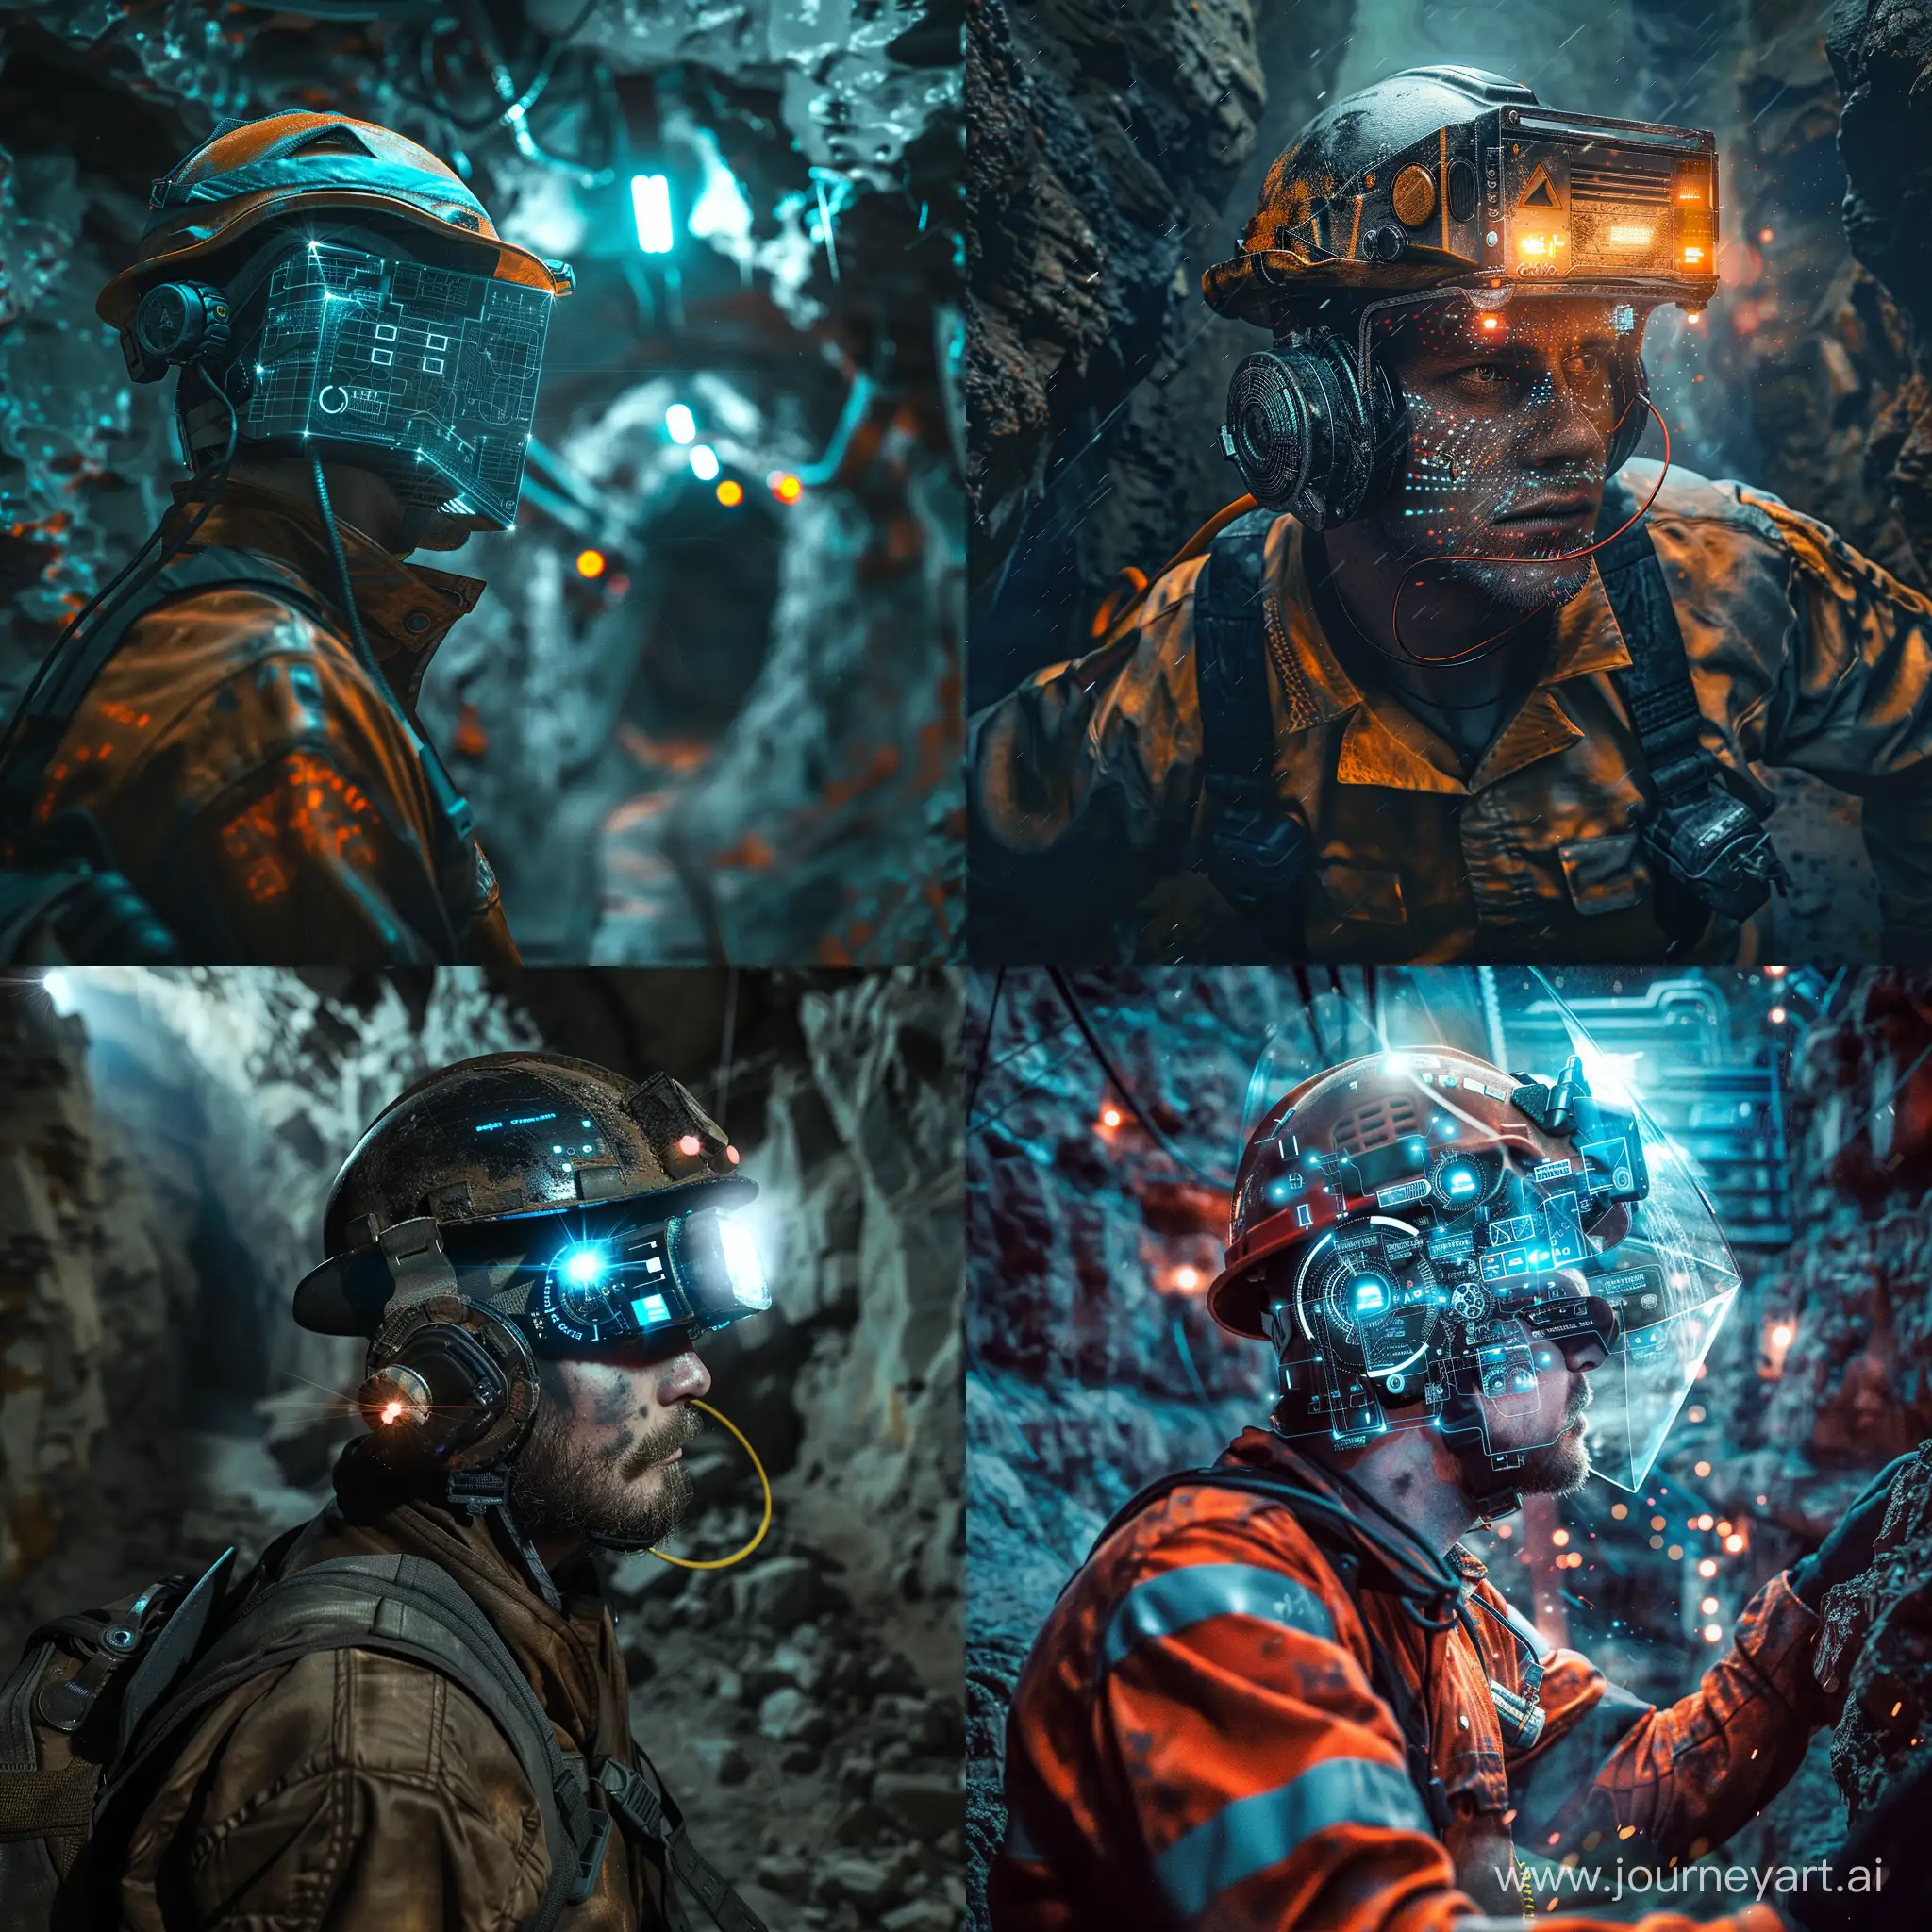 Modern-Miner-with-Smart-Safety-Gear-in-Underground-Mine